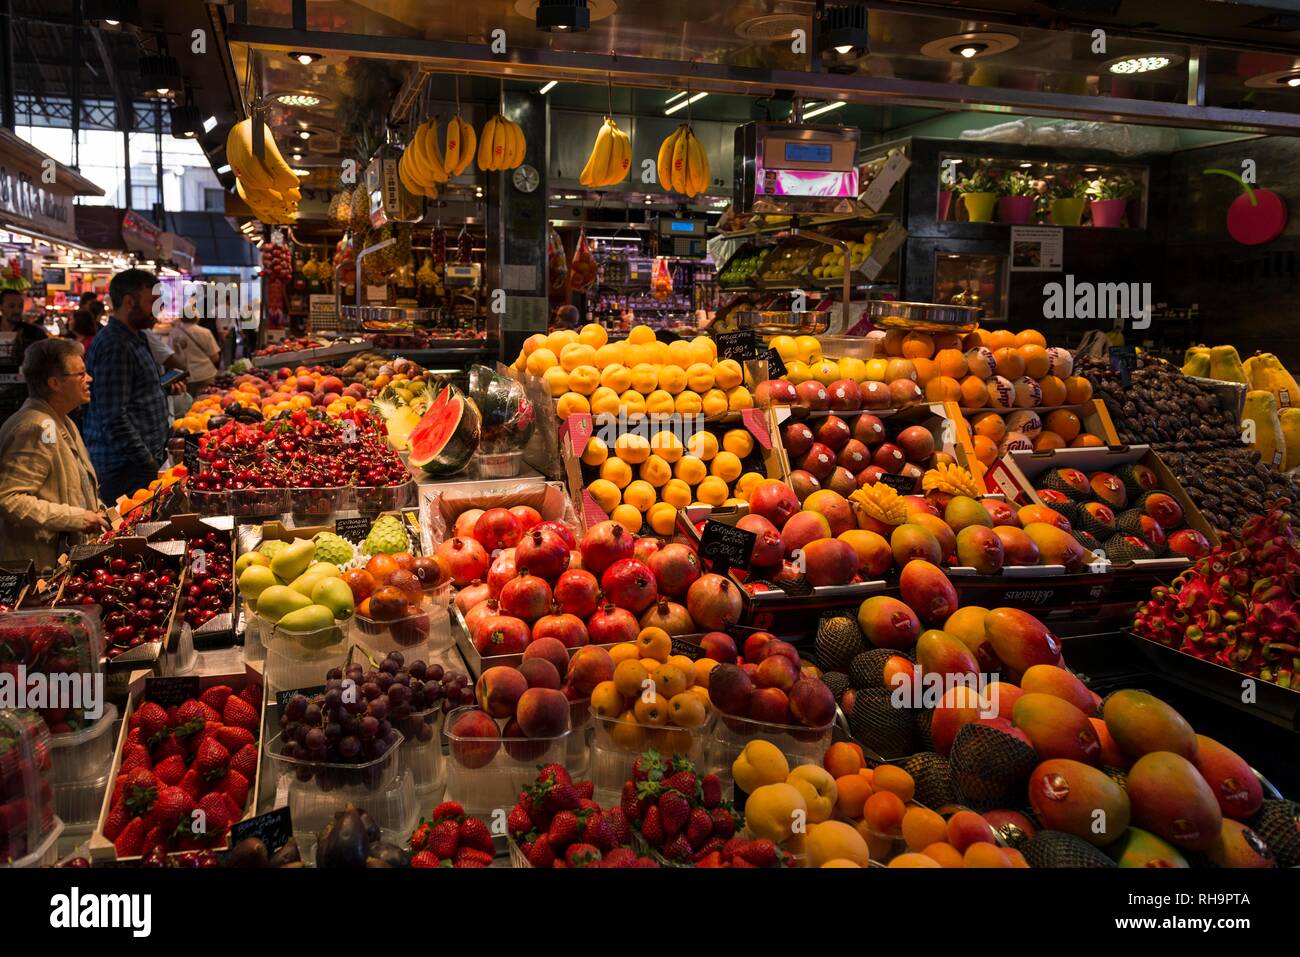 Fruit stall, Mercat de la Boqueria or Mercat de Sant Josep, market halls, Barcelona, Spain Stock Photo